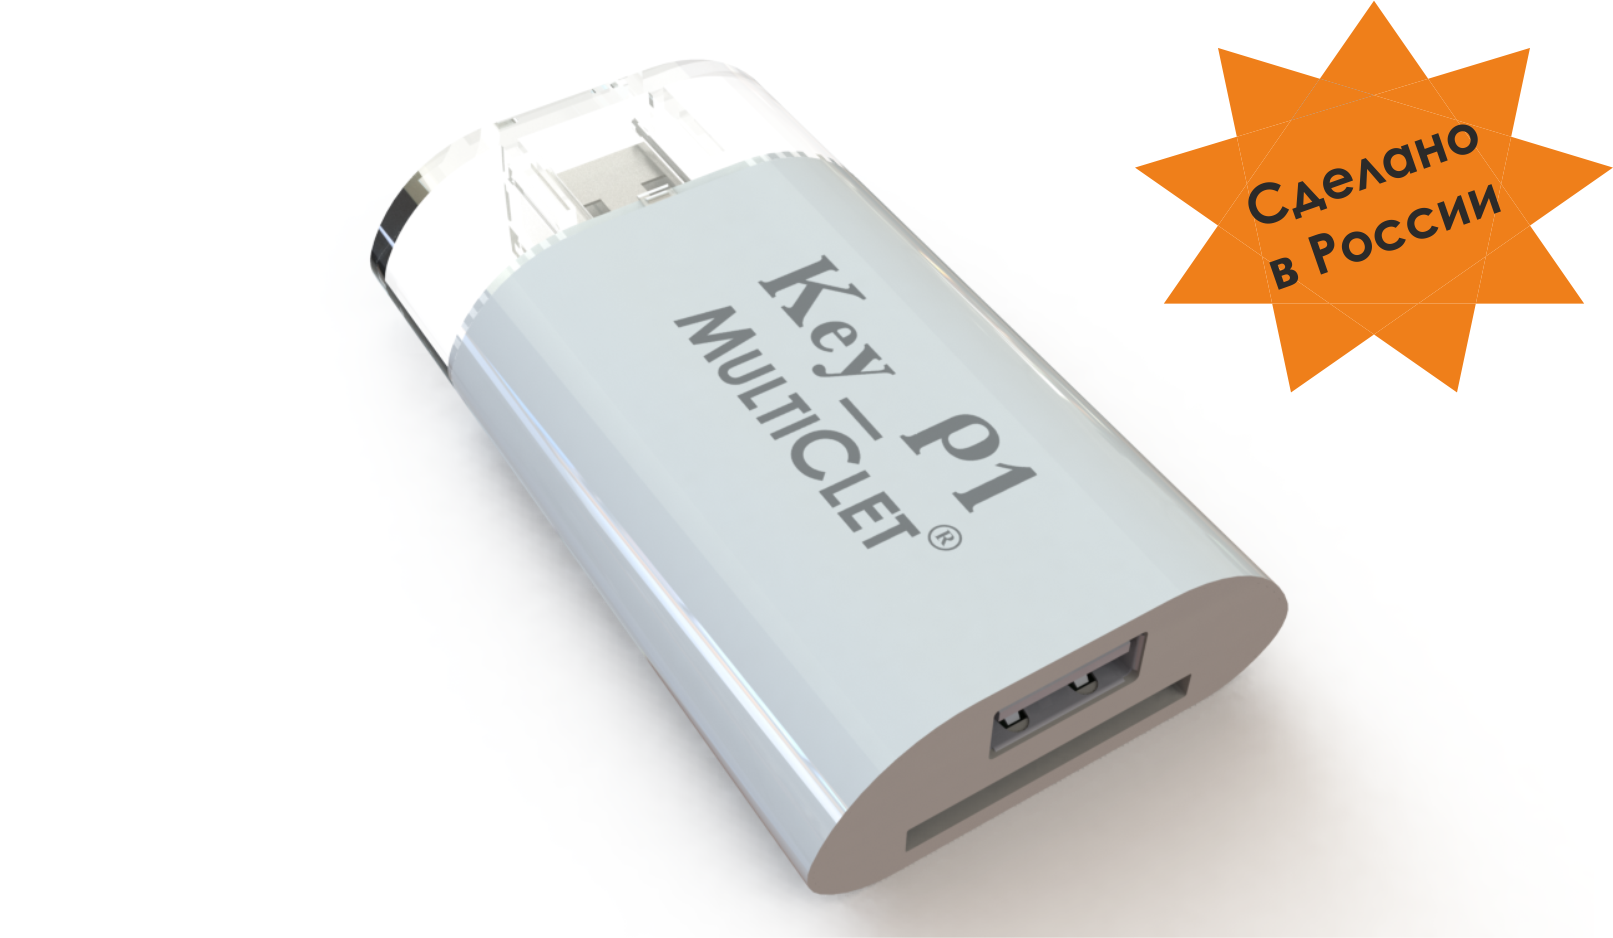 MULTICLET анонсирует новый продукт: Key_P1 MULTICLET Цифровой страж